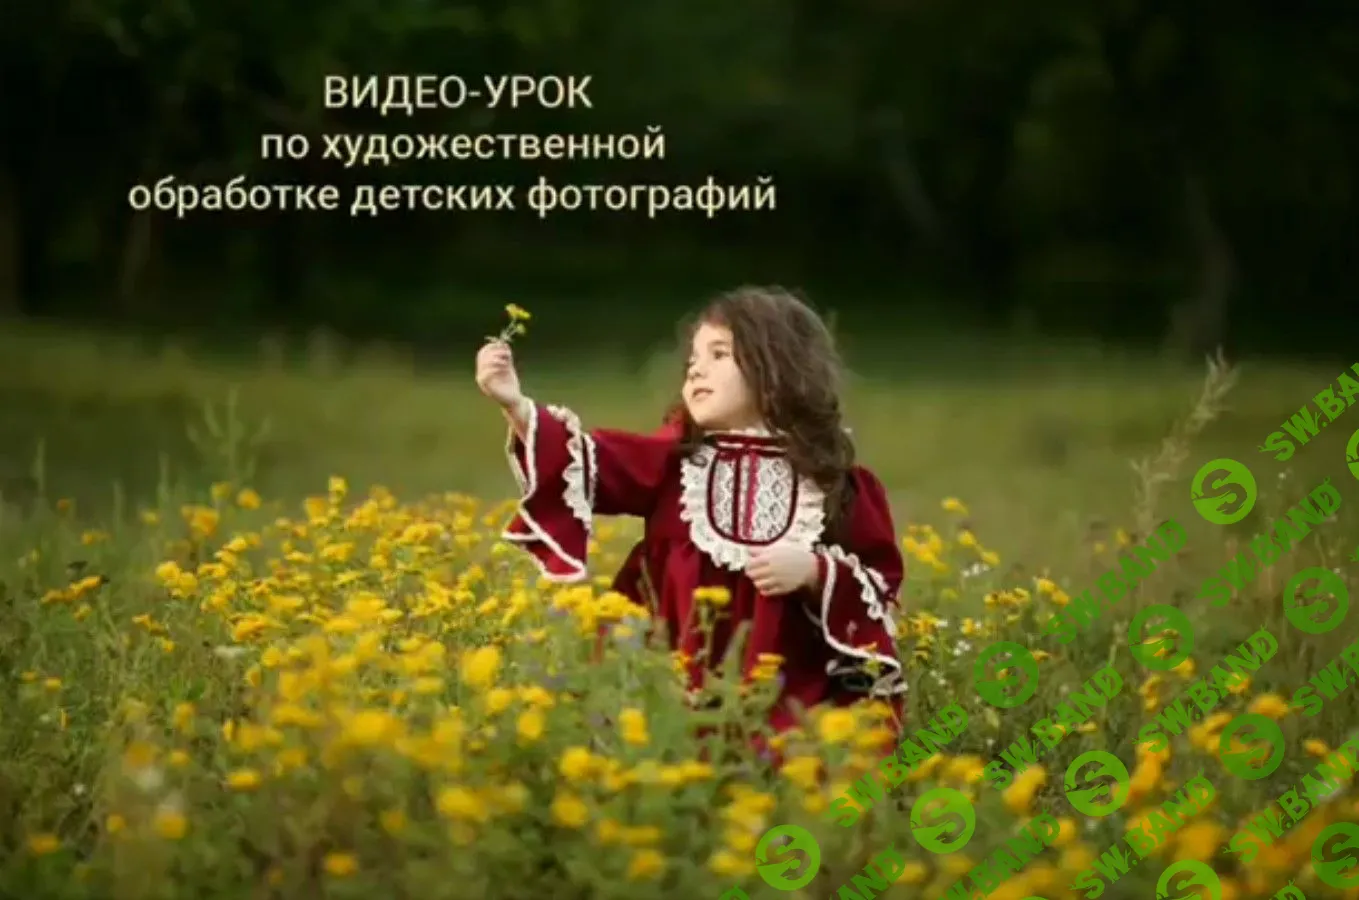 [Анна Бондарева] Художественная обработка детских фотографий (2020)